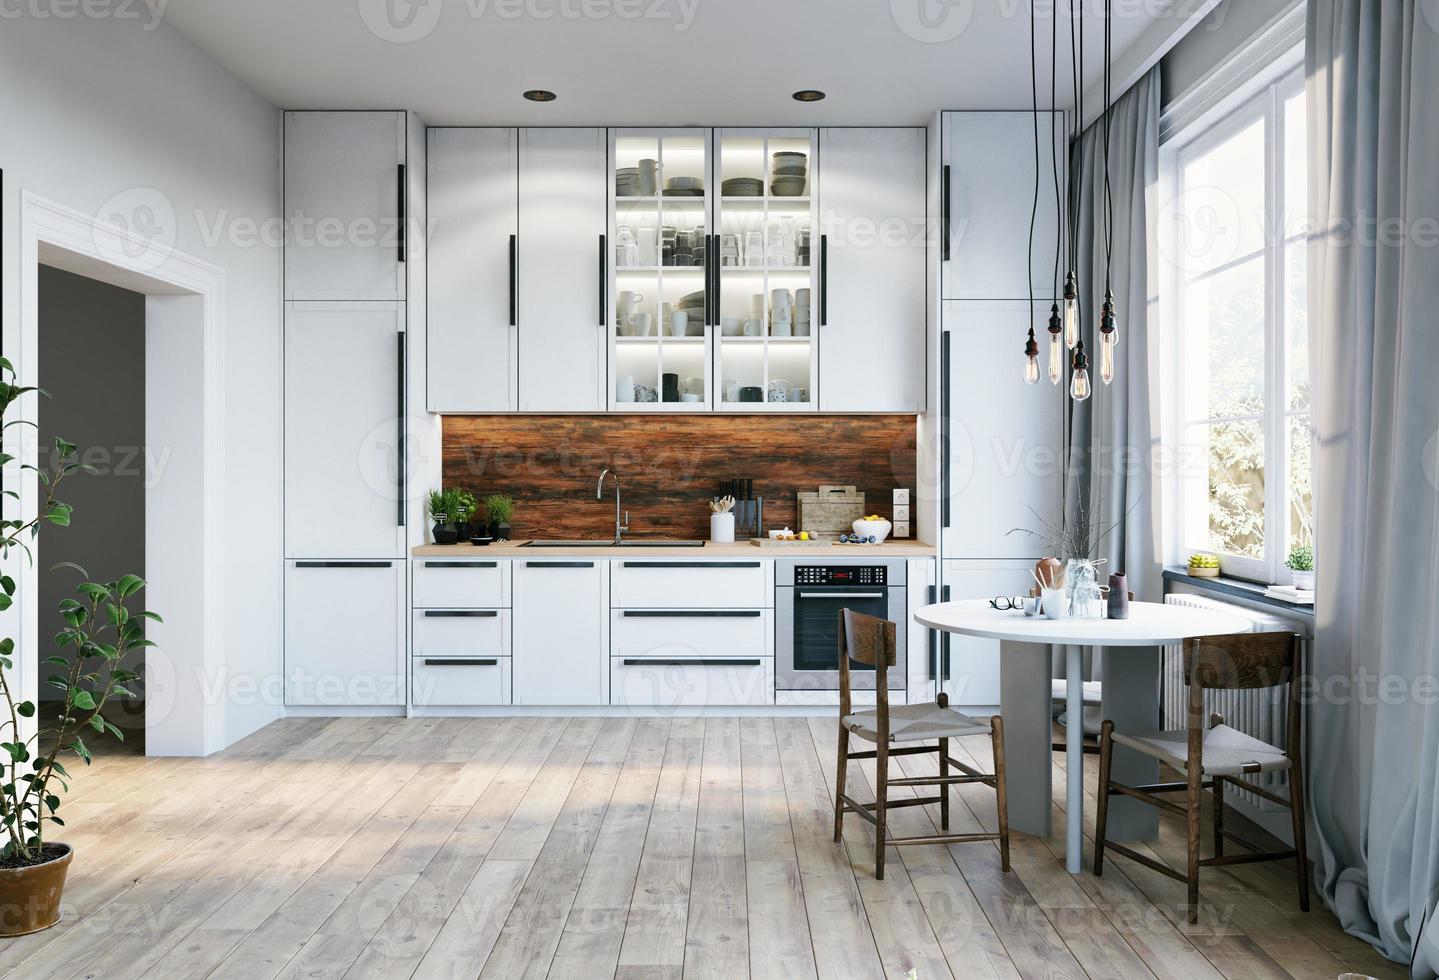 interior moderno da cozinha foto